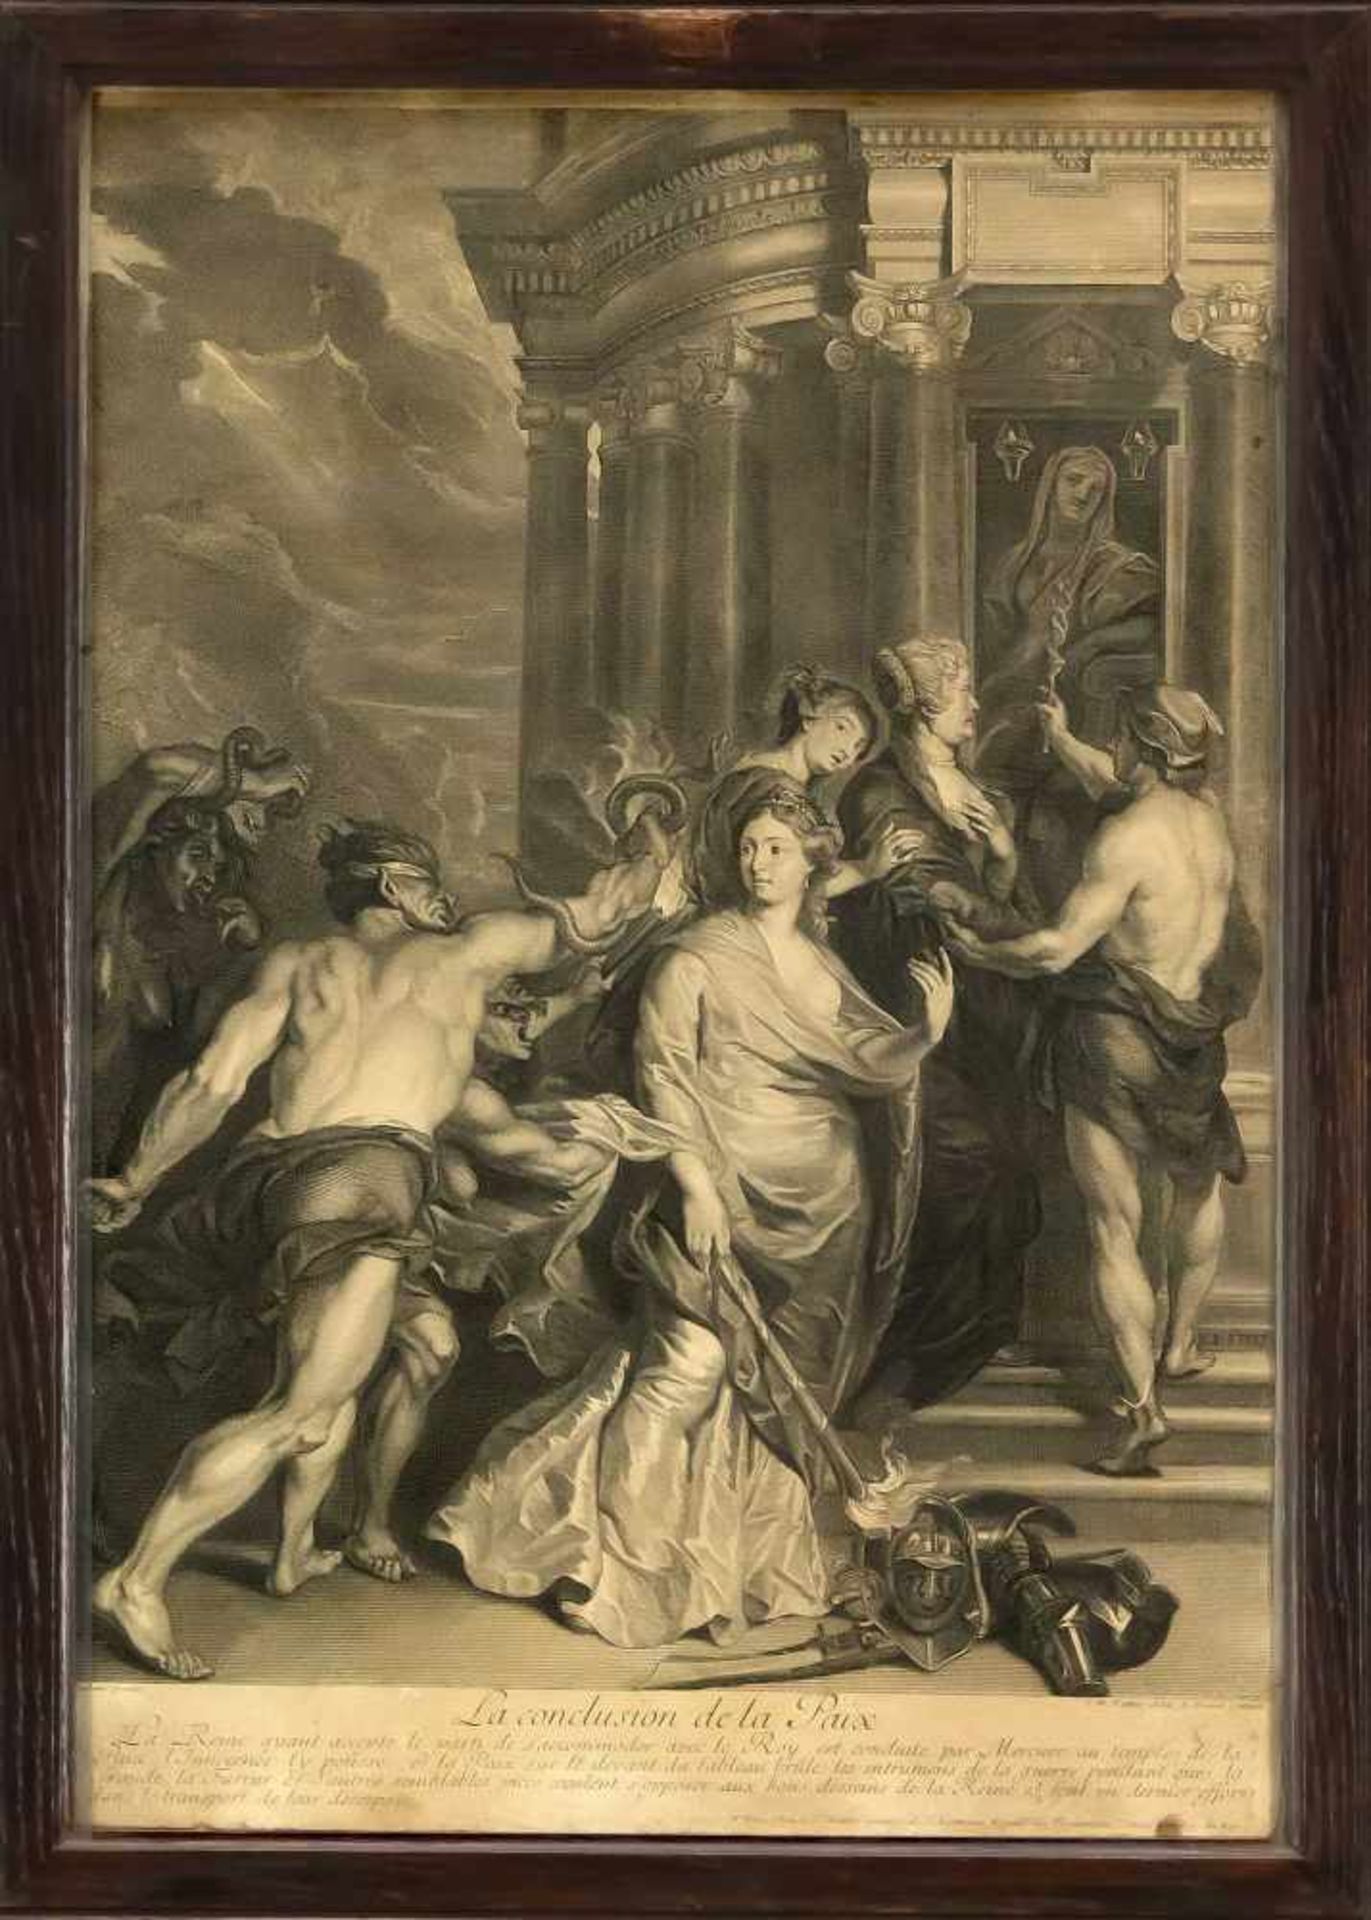 Folge von 5 Kupferstichen nach Rubens aus einen Zyklus zu Maria di Medici, Kupferstichevon Bernard - Image 2 of 5